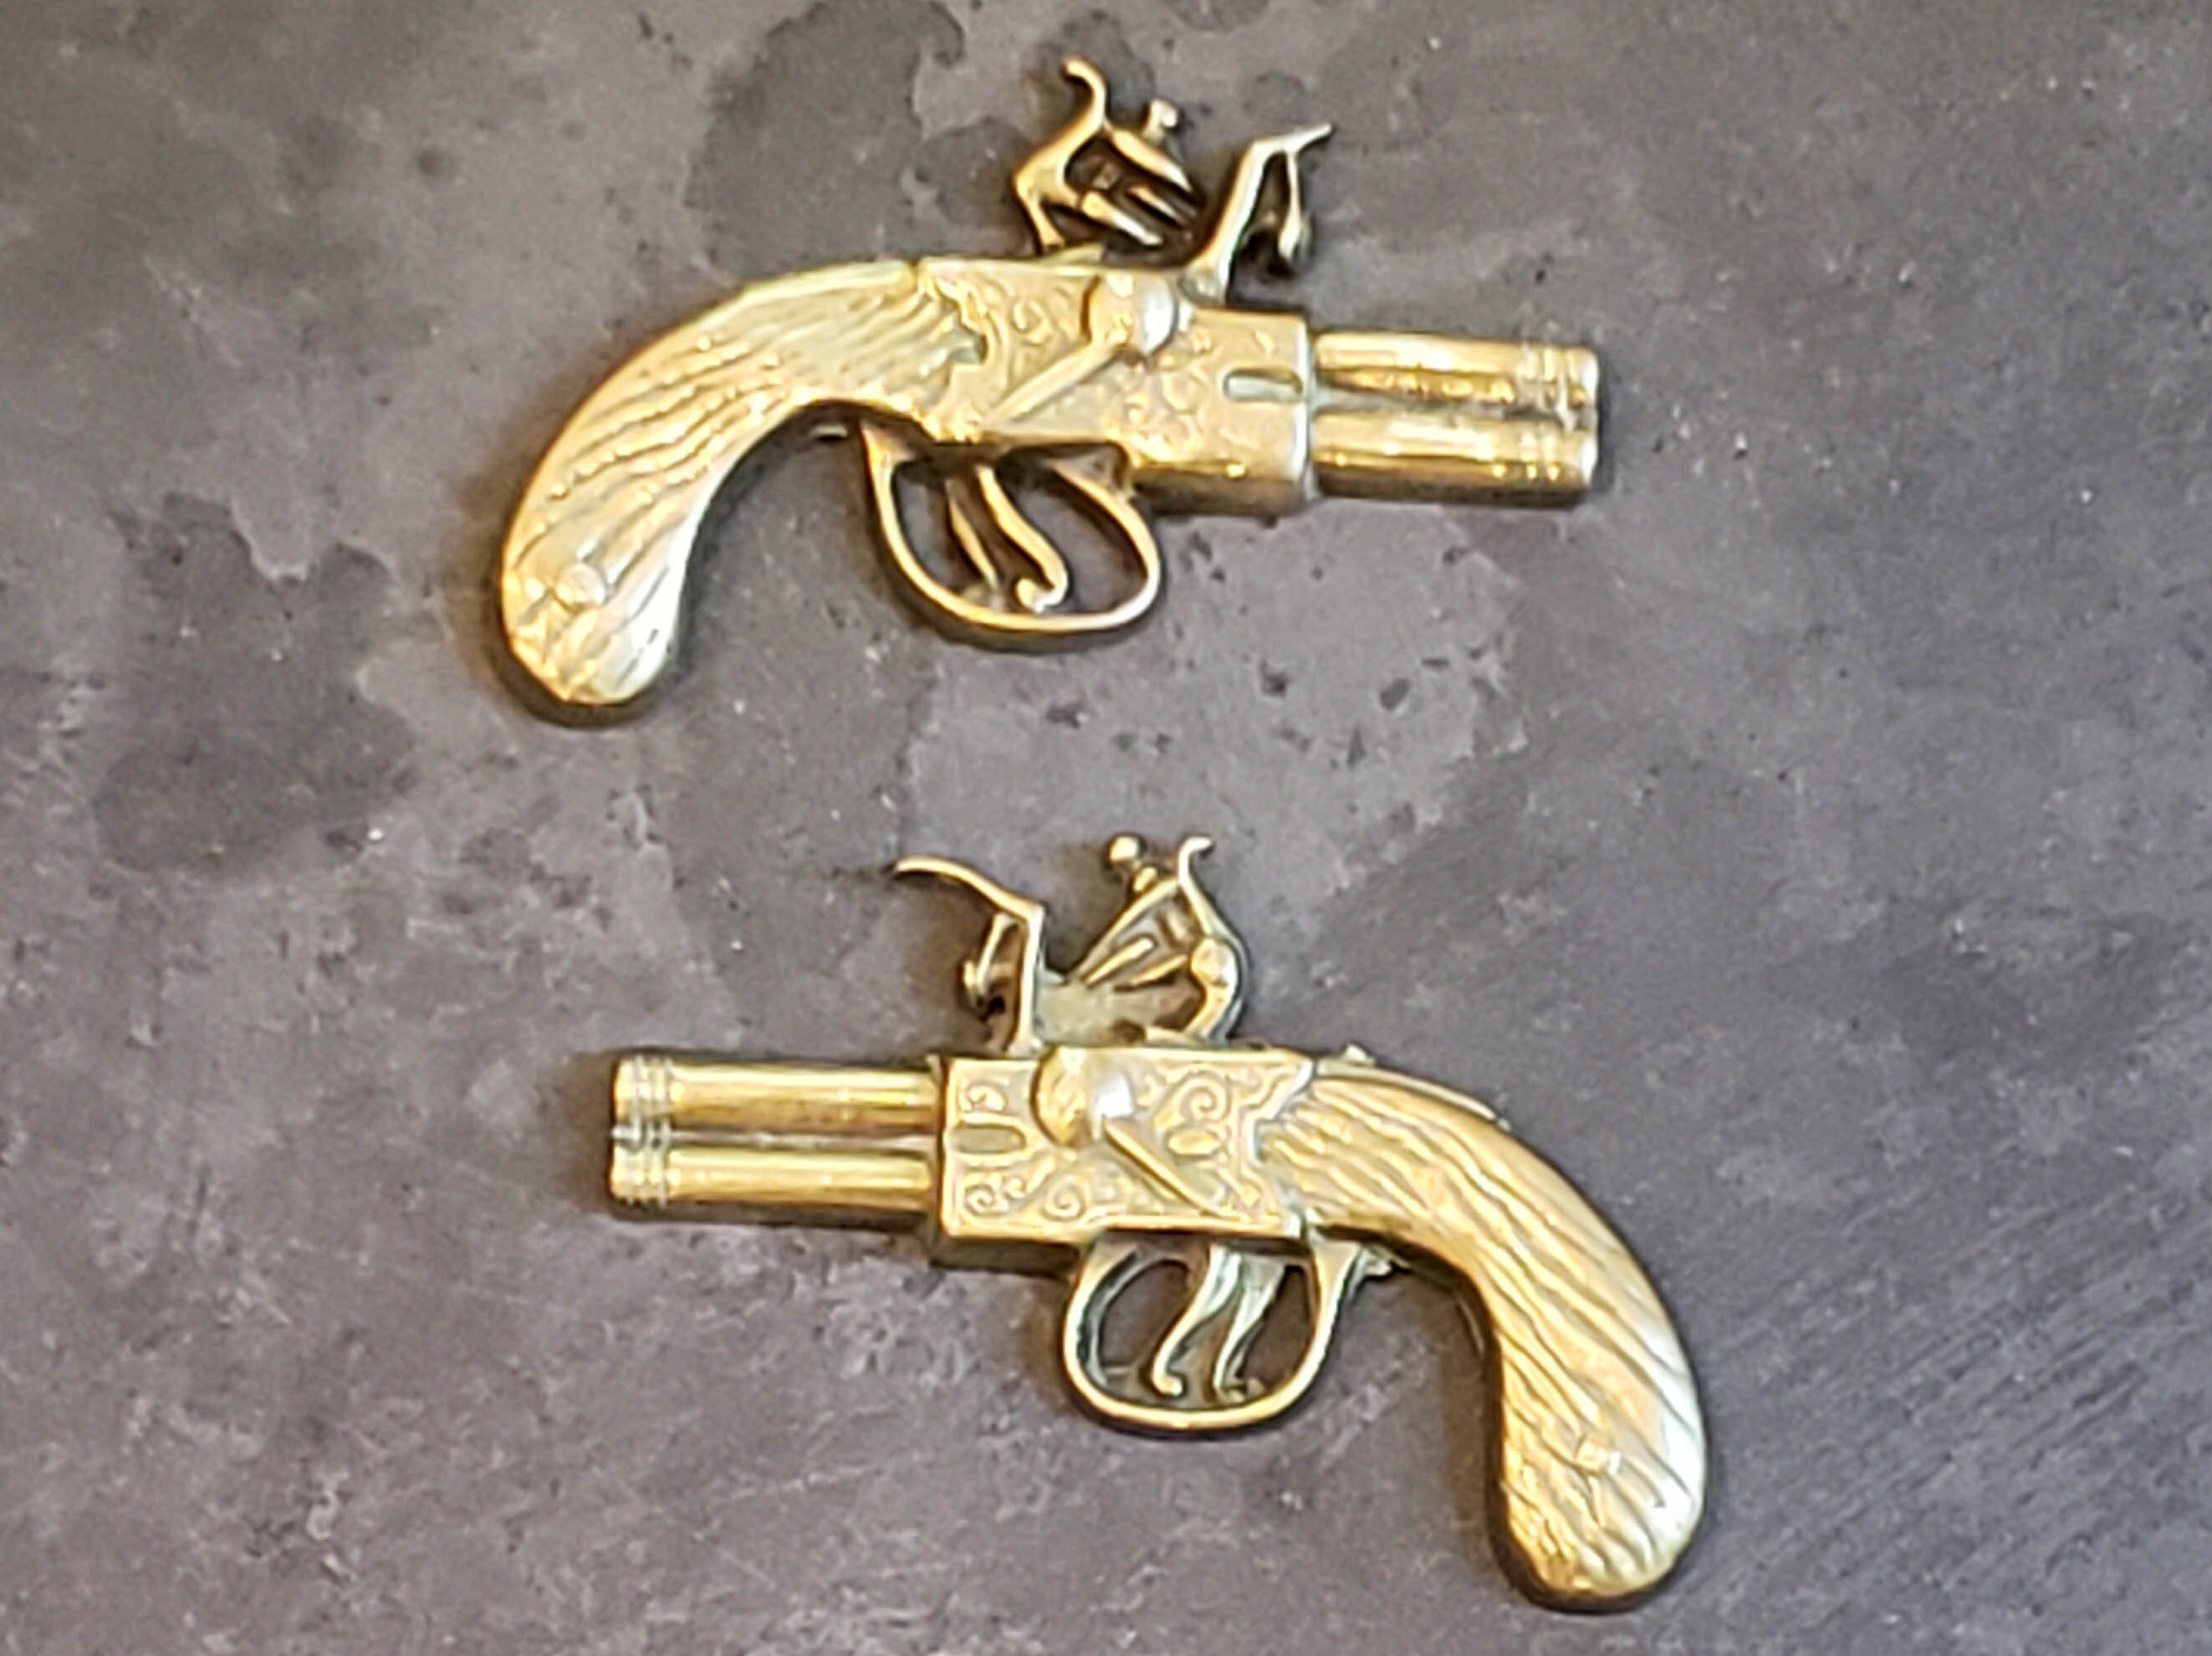 Vintage pistol wall hanging, brass metal revolver gun wall decor, retro  revolver